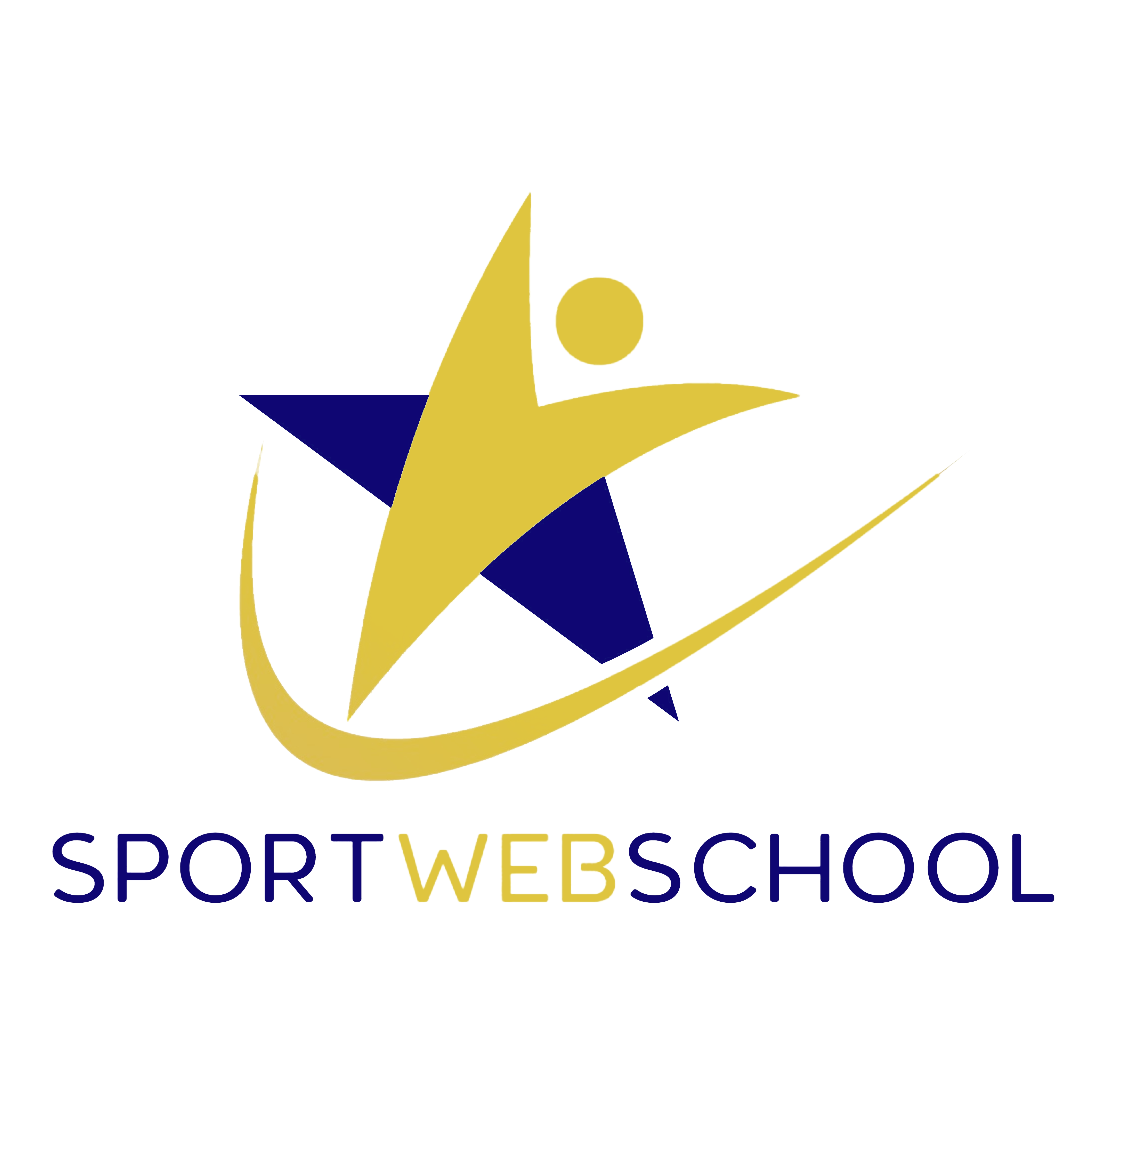 Sport web school